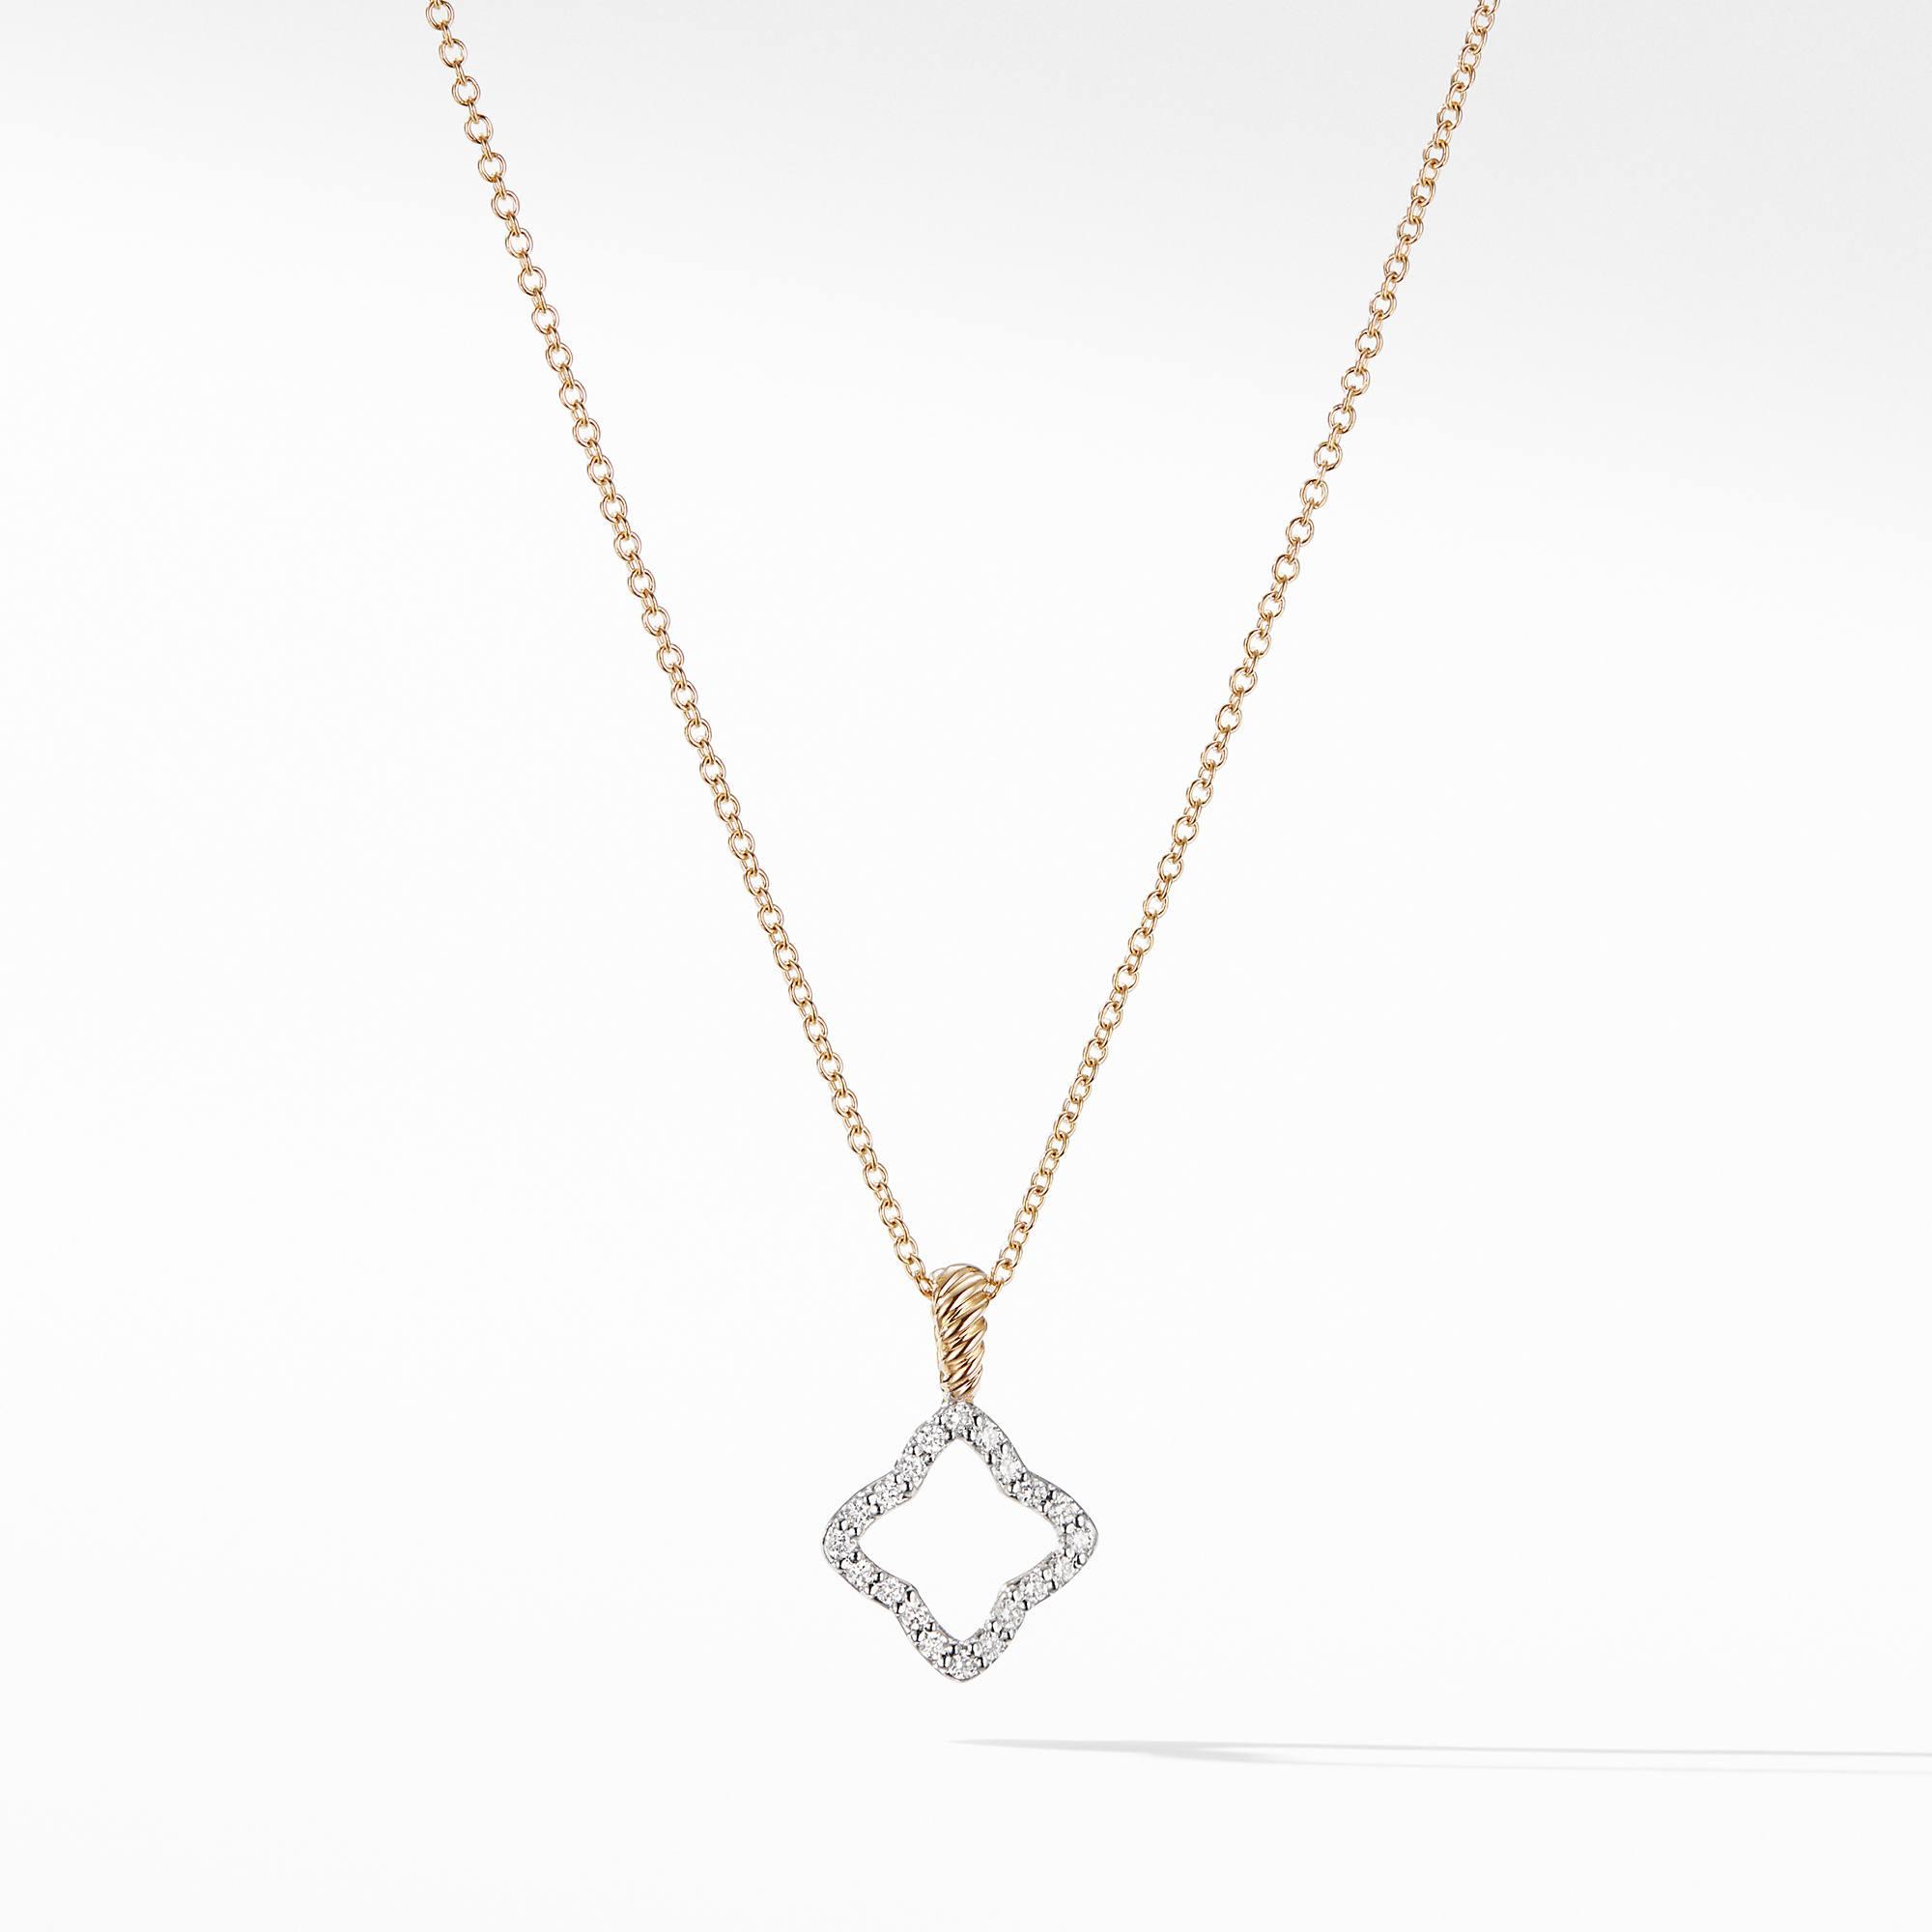 David Yurman Cable Collectibles Quatrefoil Pendant Necklace with Diamonds